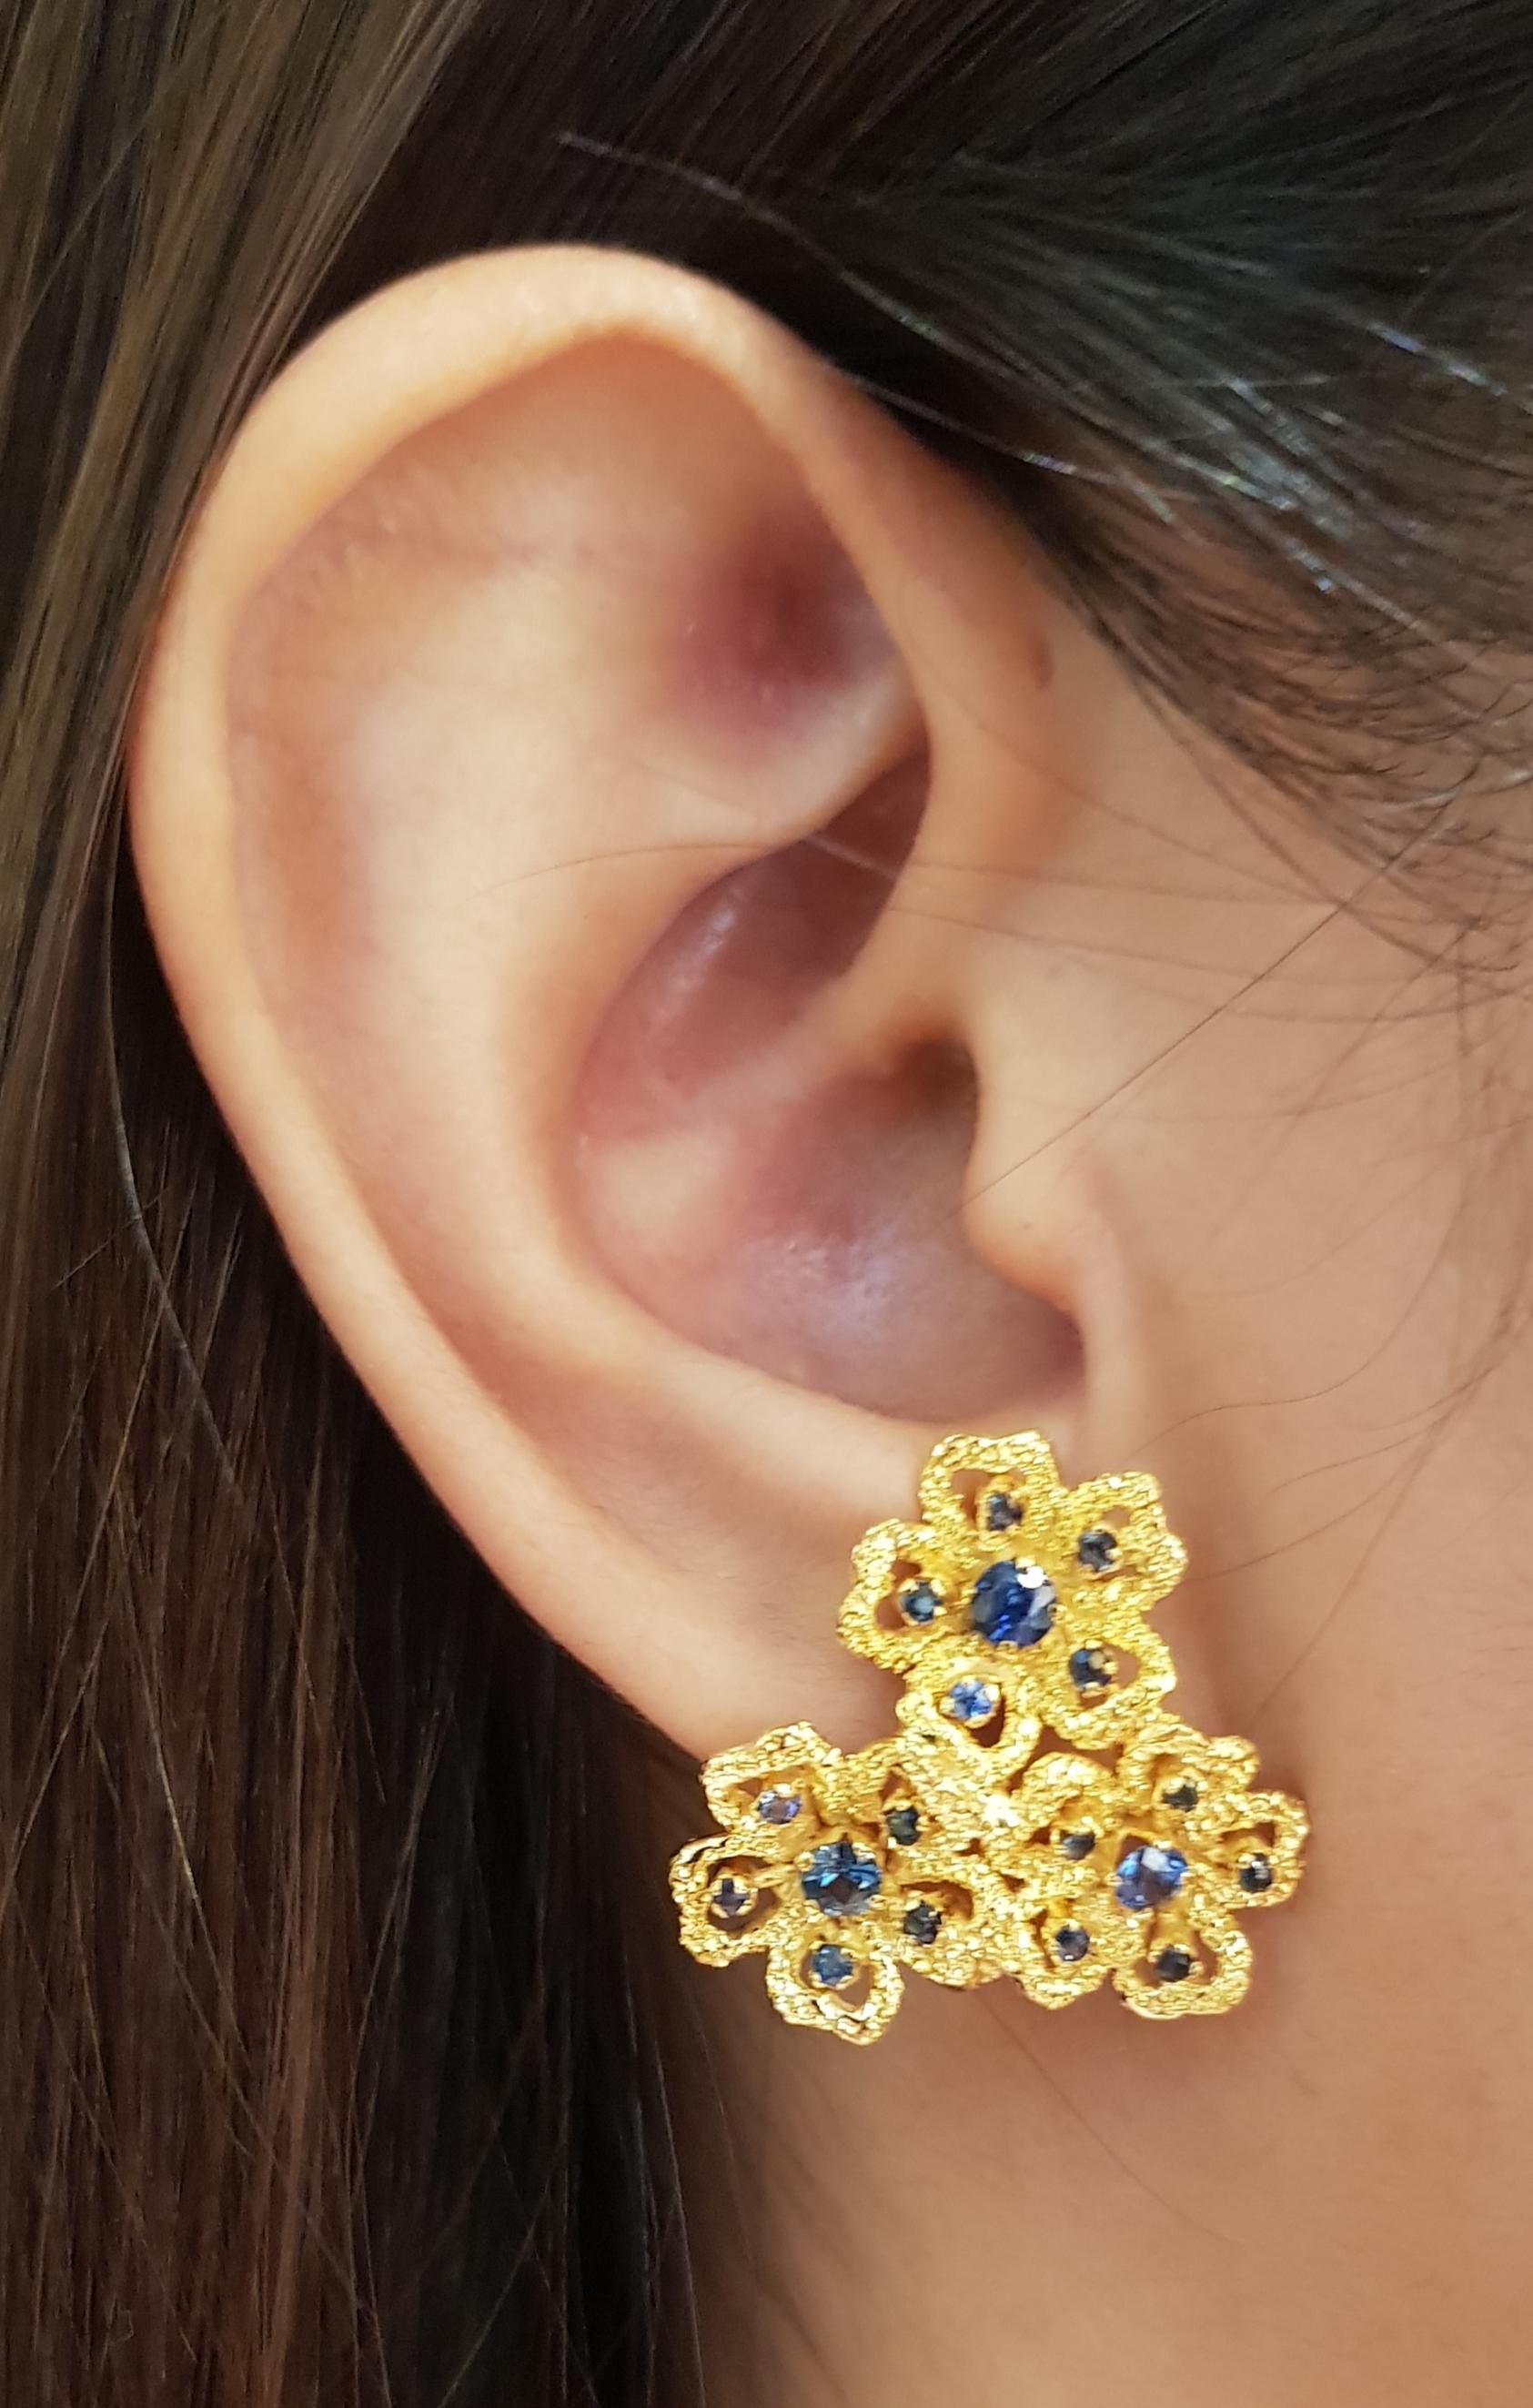 Boucles d'oreilles saphir bleu 0.80 carat sur or 14 carats

Largeur : 2.8 cm 
Longueur : 2.4 cm
Poids total : 10,31 grammes

